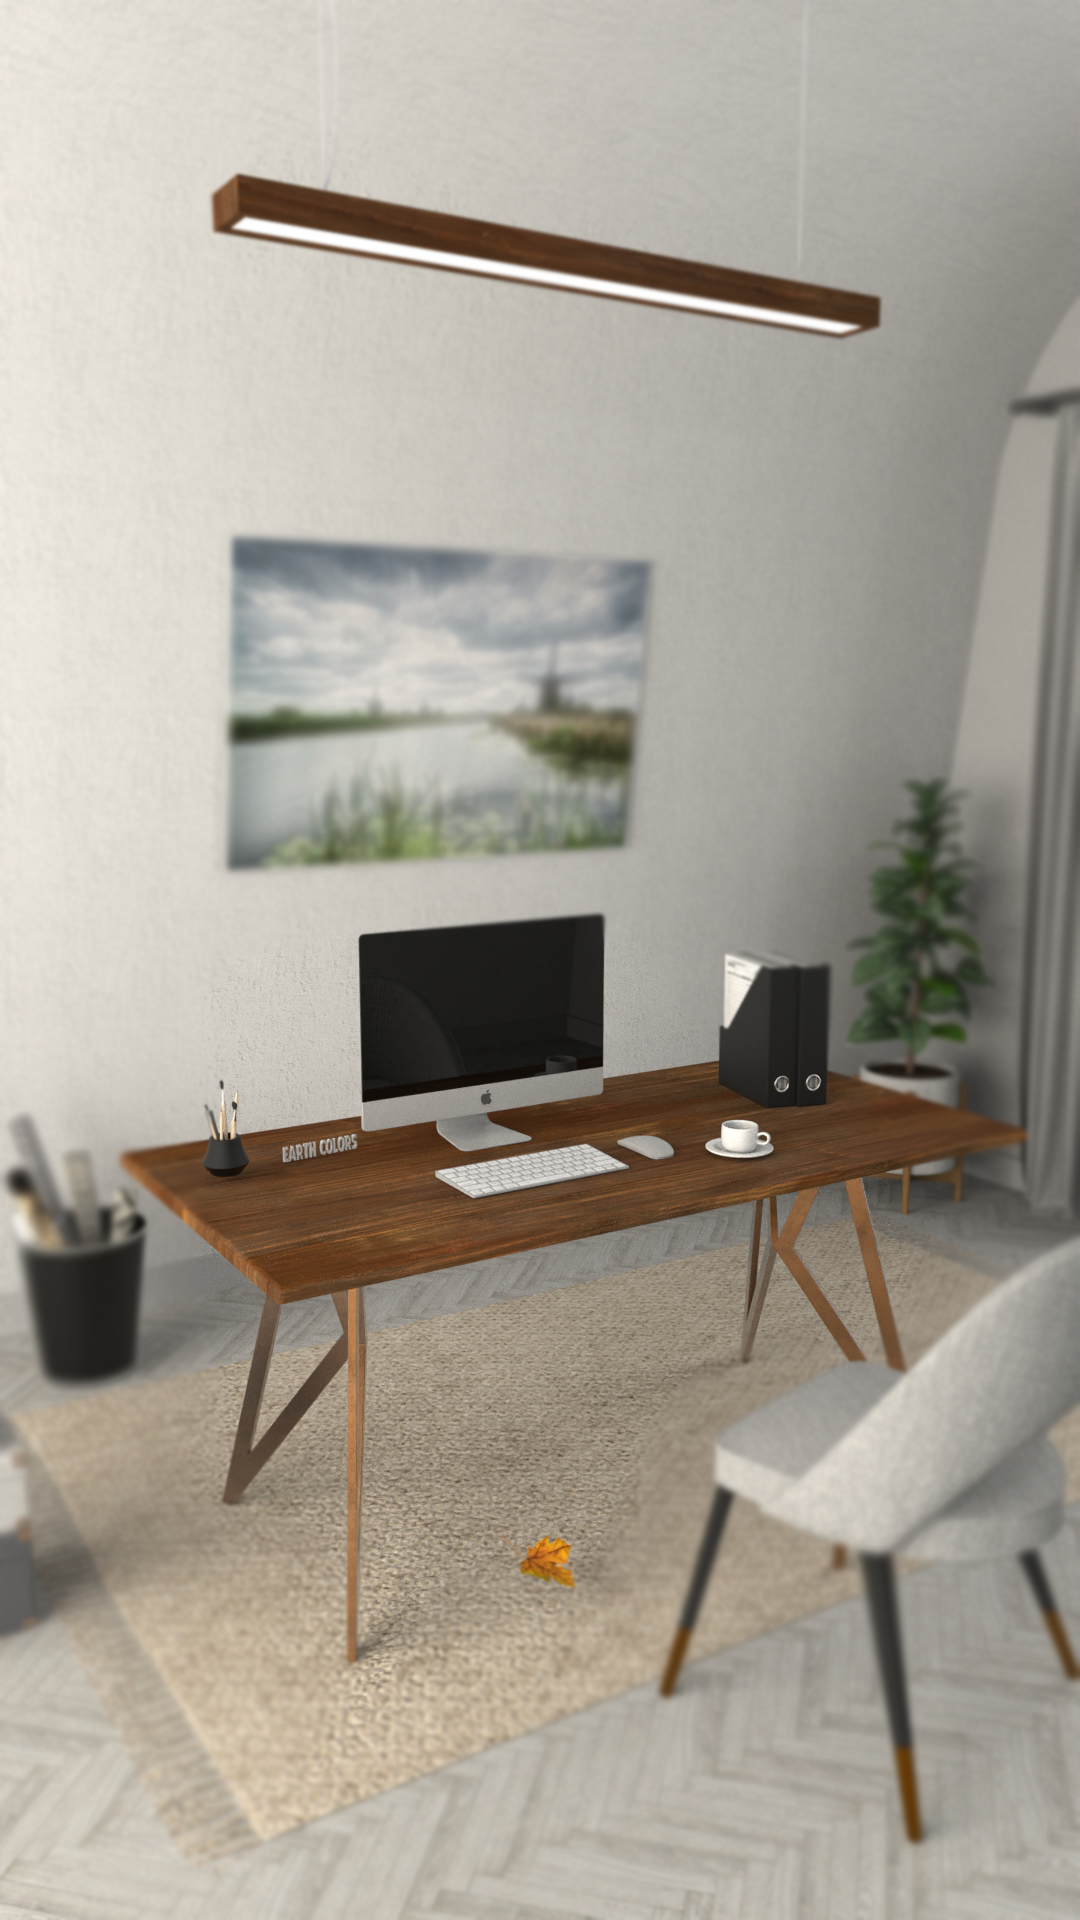 Desk for office furniture